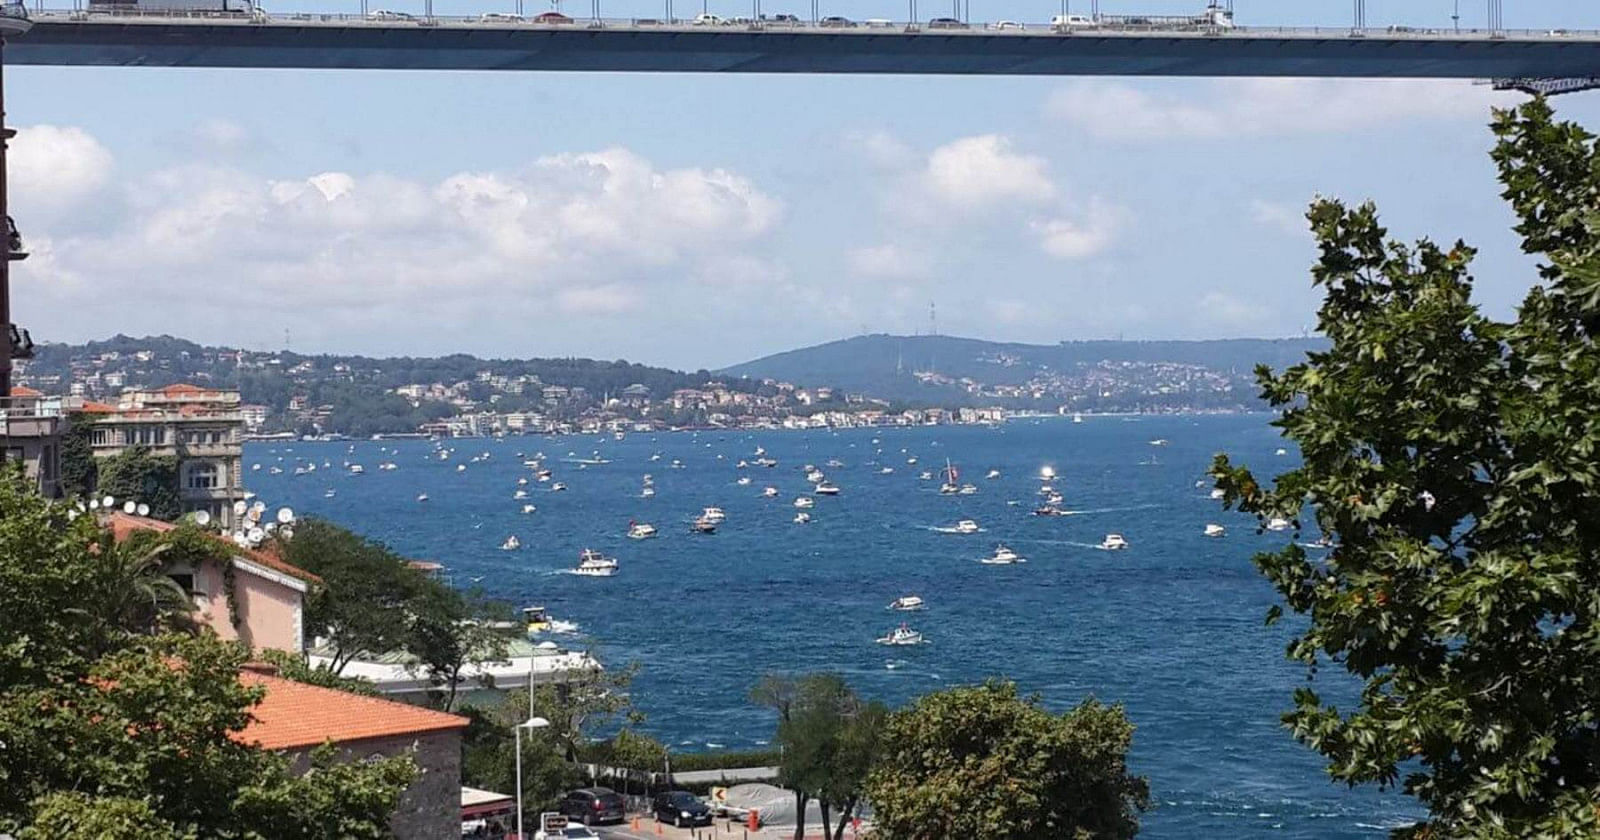 Alugar um barco em İstanbul